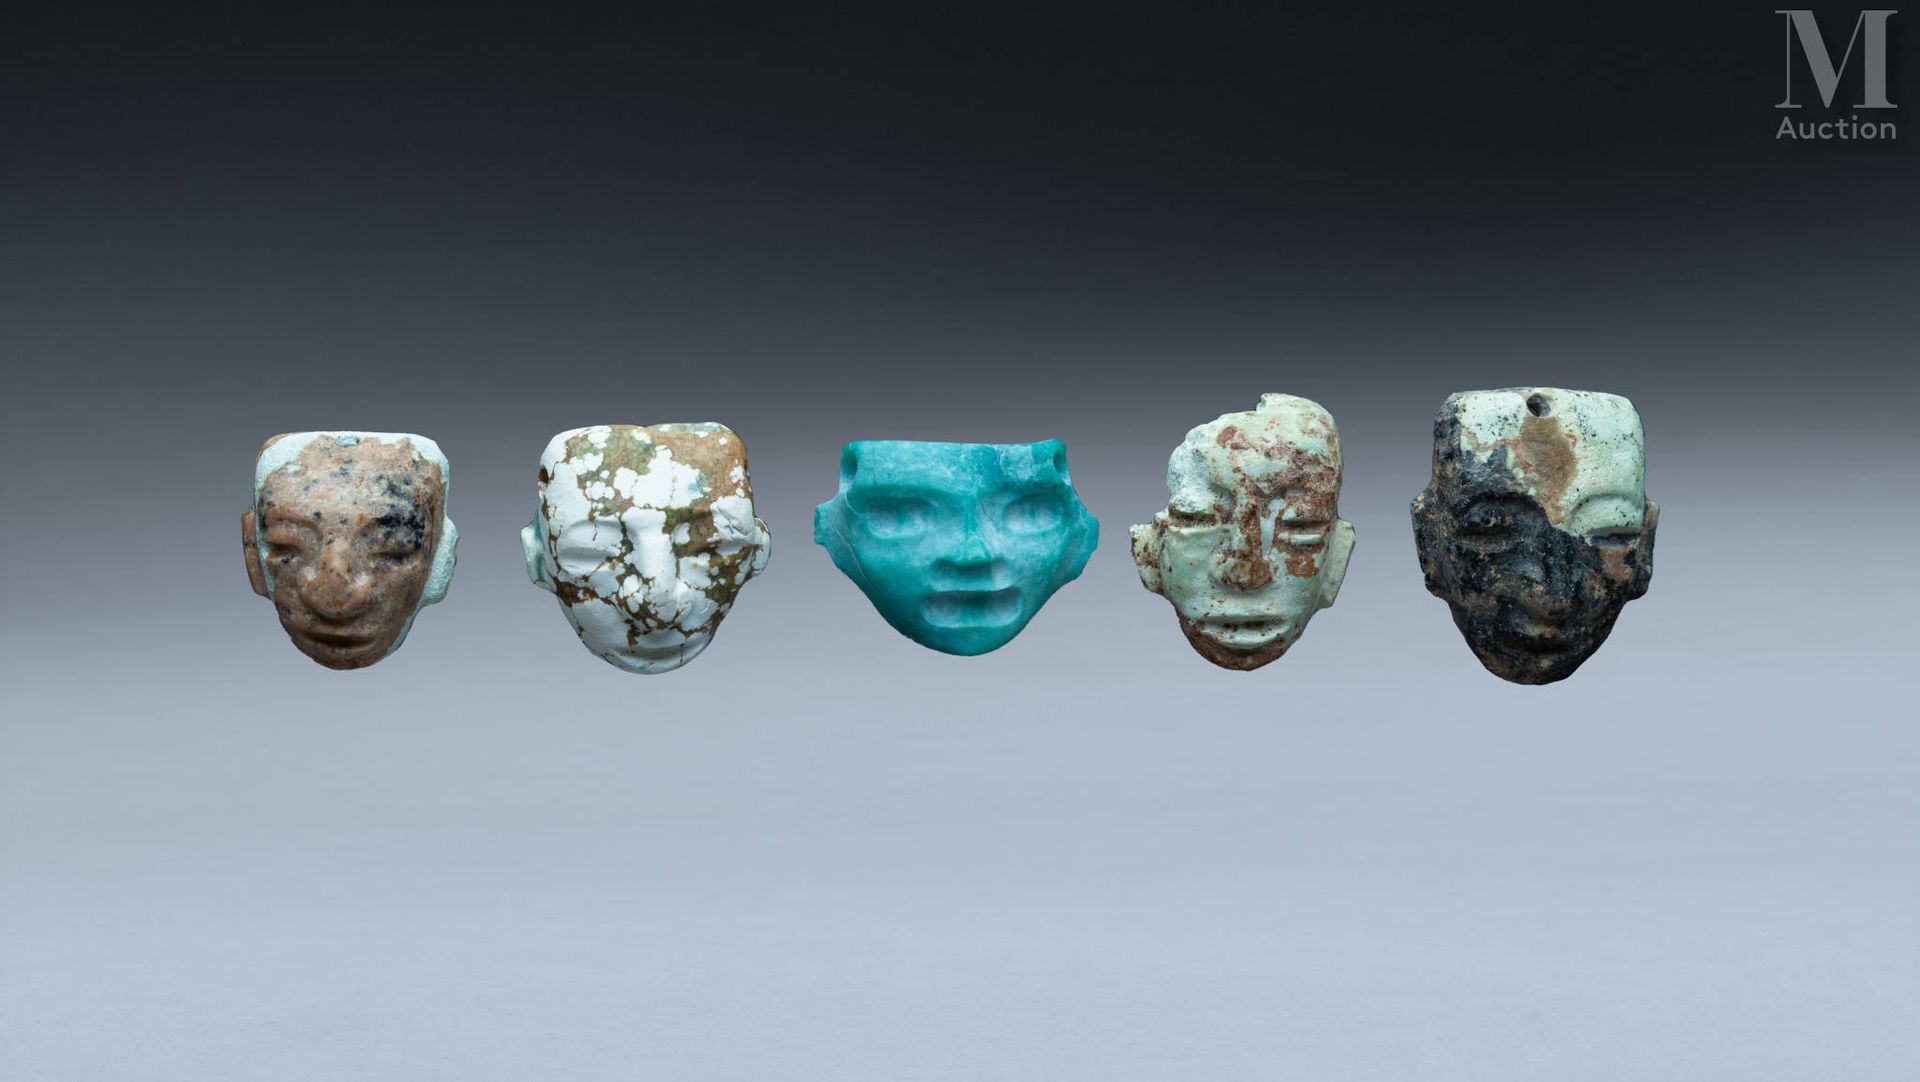 Cinq petits masques diminutifs mit herrschaftlichen Gesichtern mit fliehender St&hellip;